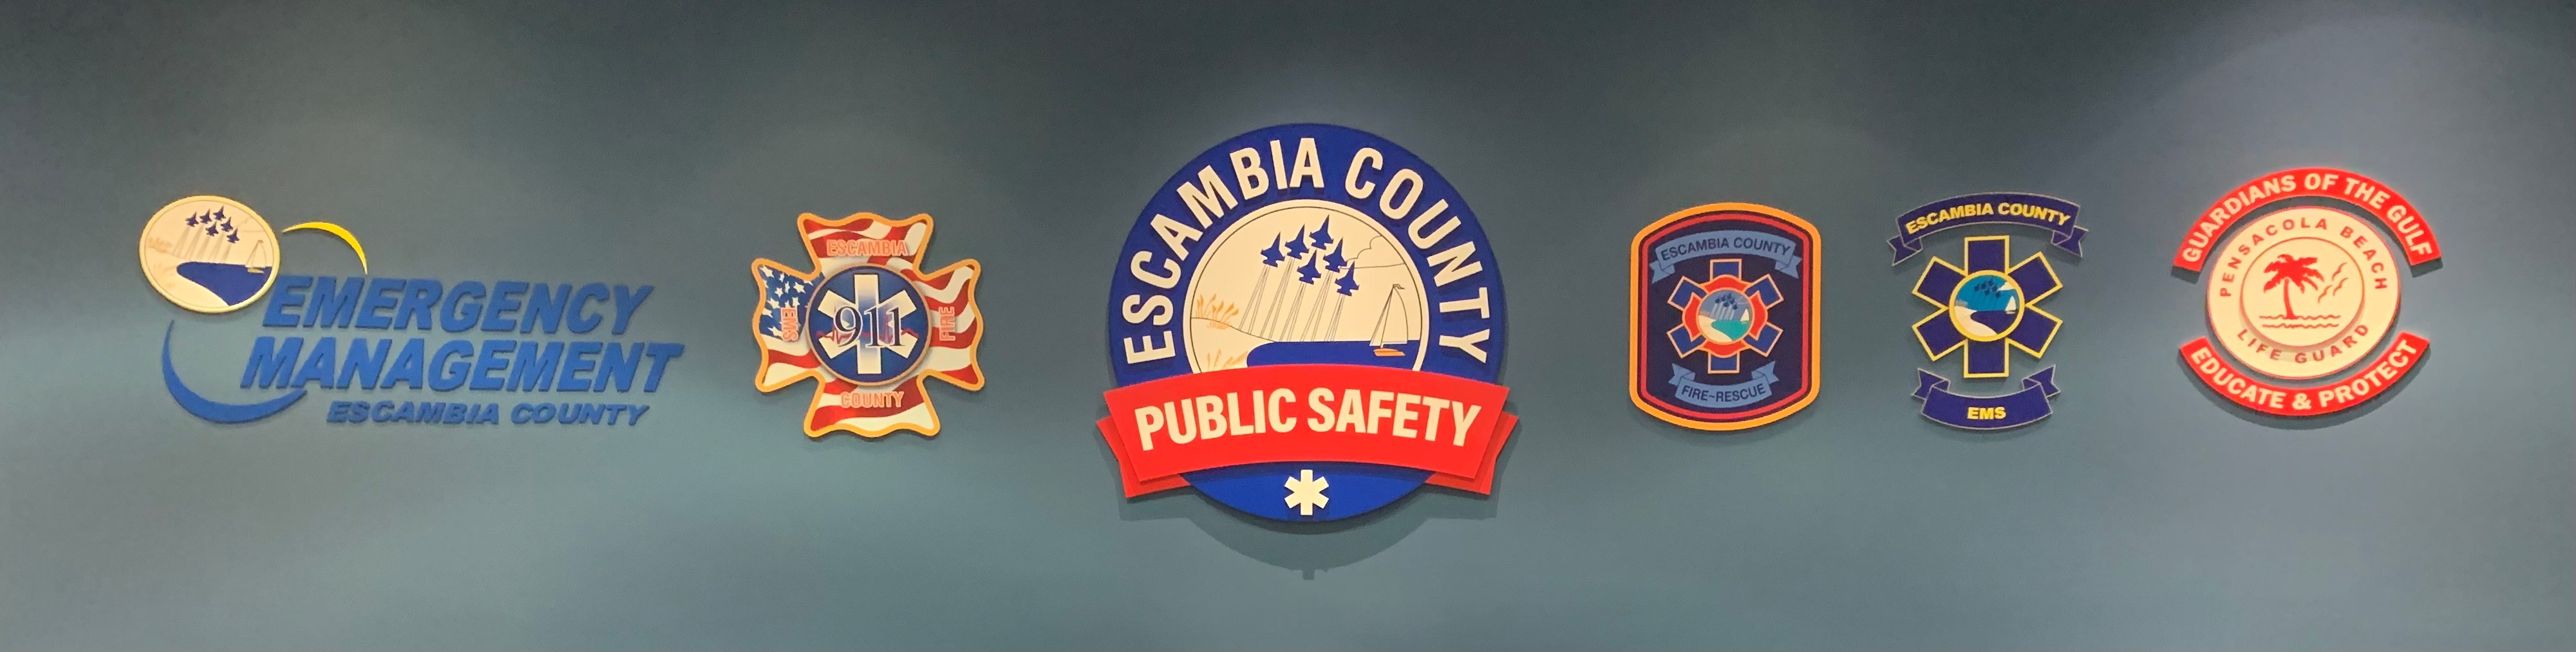 Public Safety logos